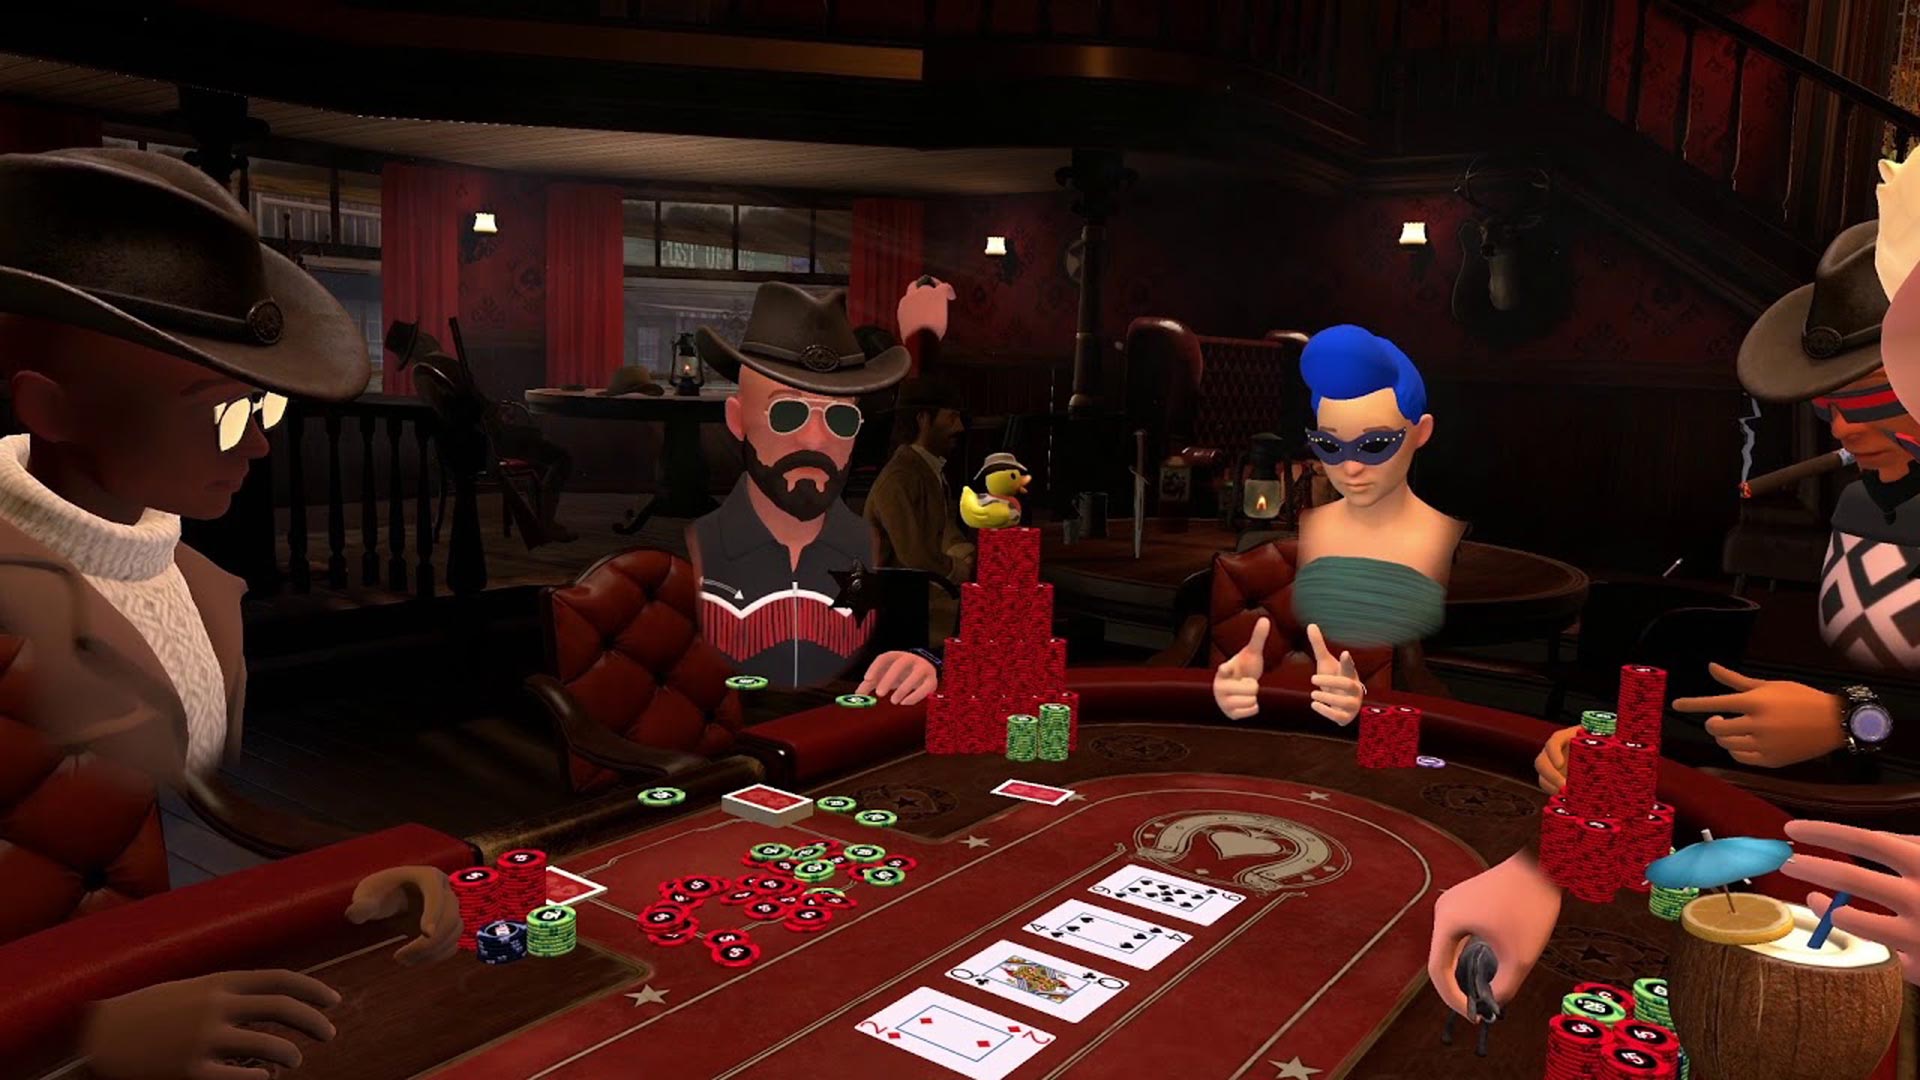 PokerStars VR' Brings Multiplayer 